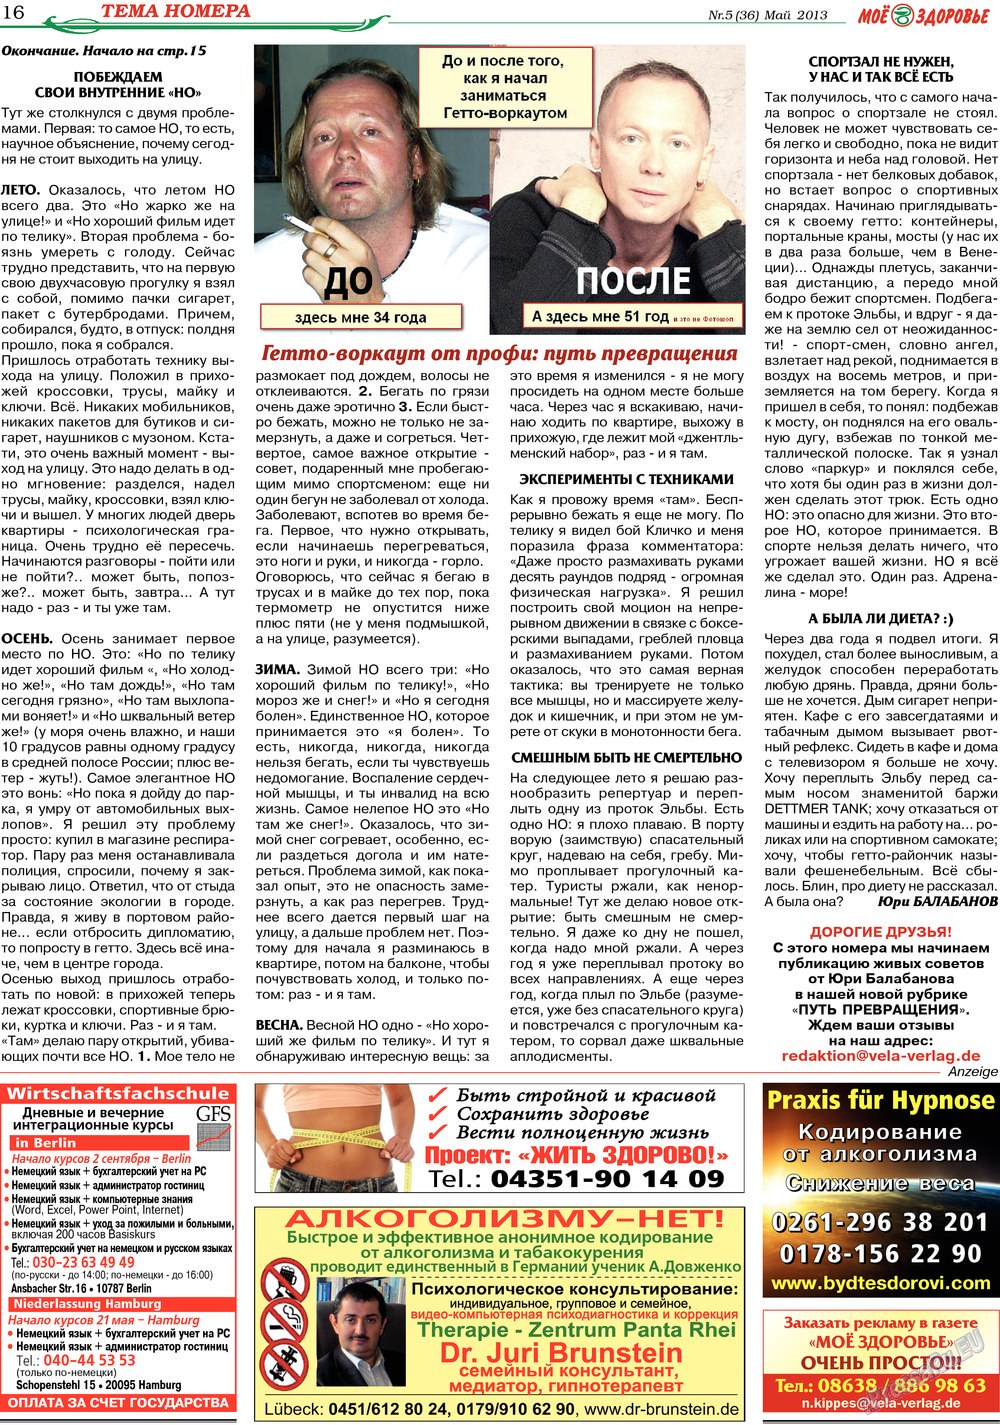 Кругозор (газета). 2013 год, номер 5, стр. 16